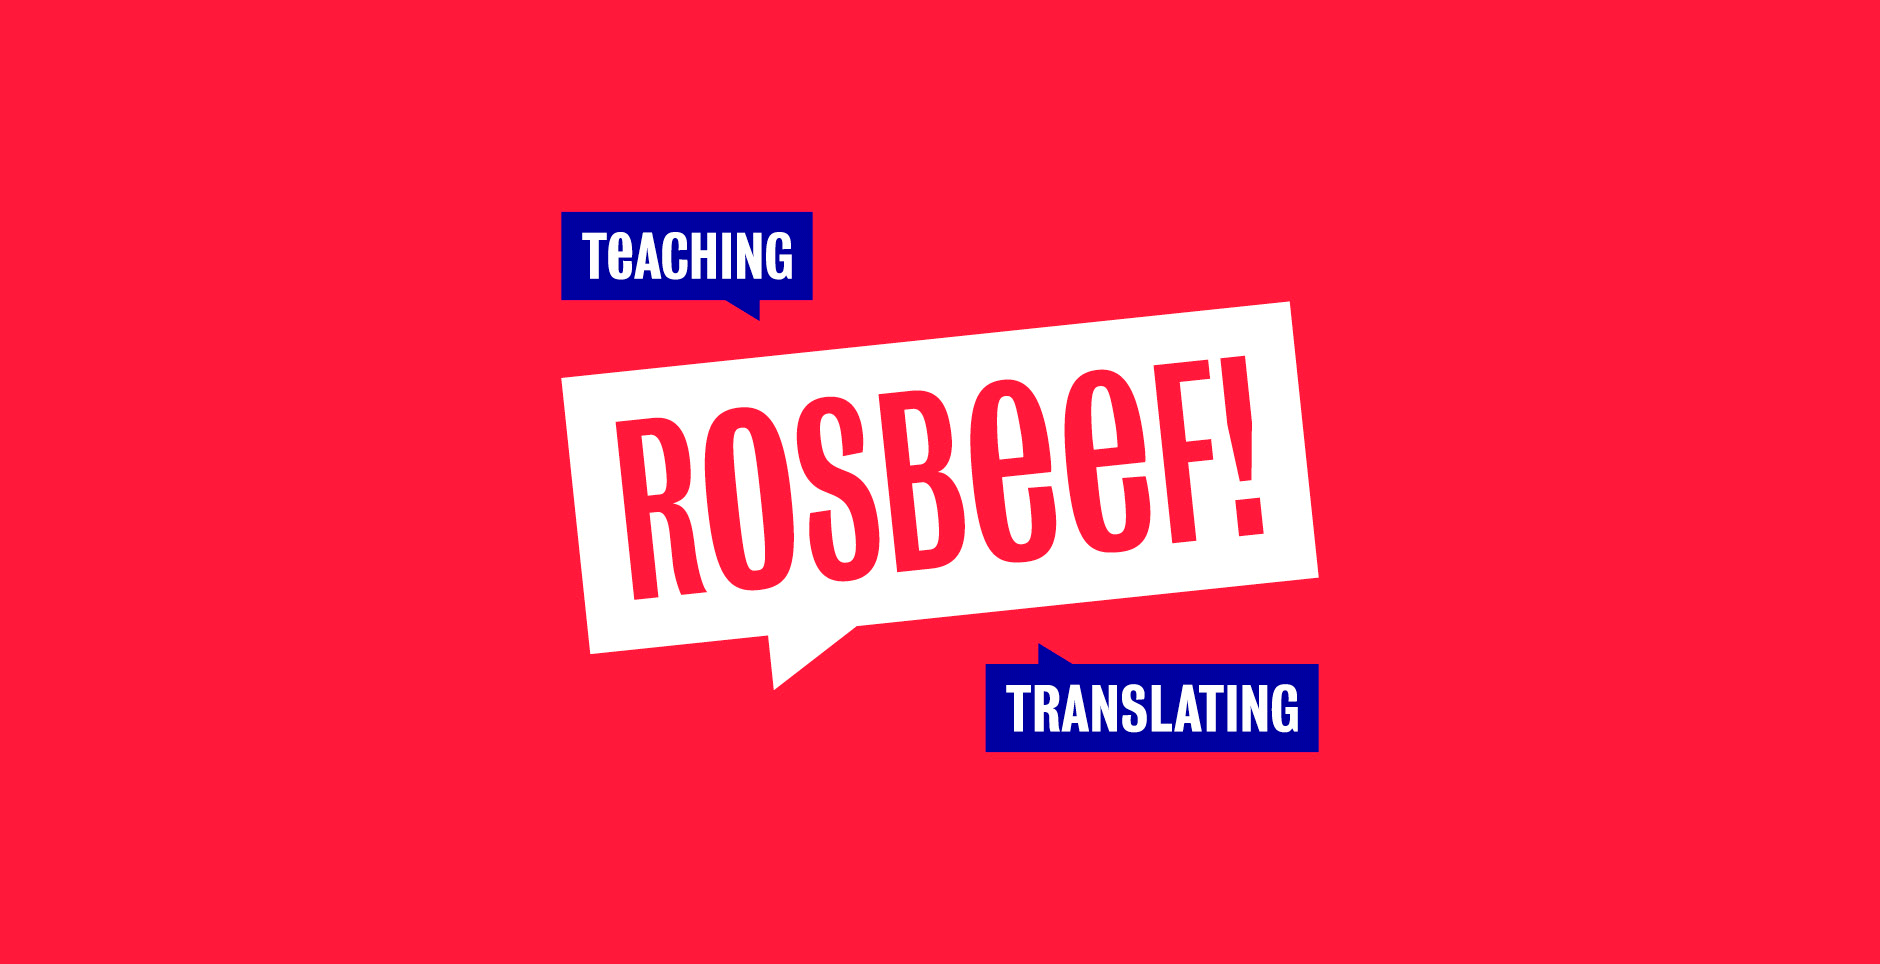 teaching translating rosbeef logo branding